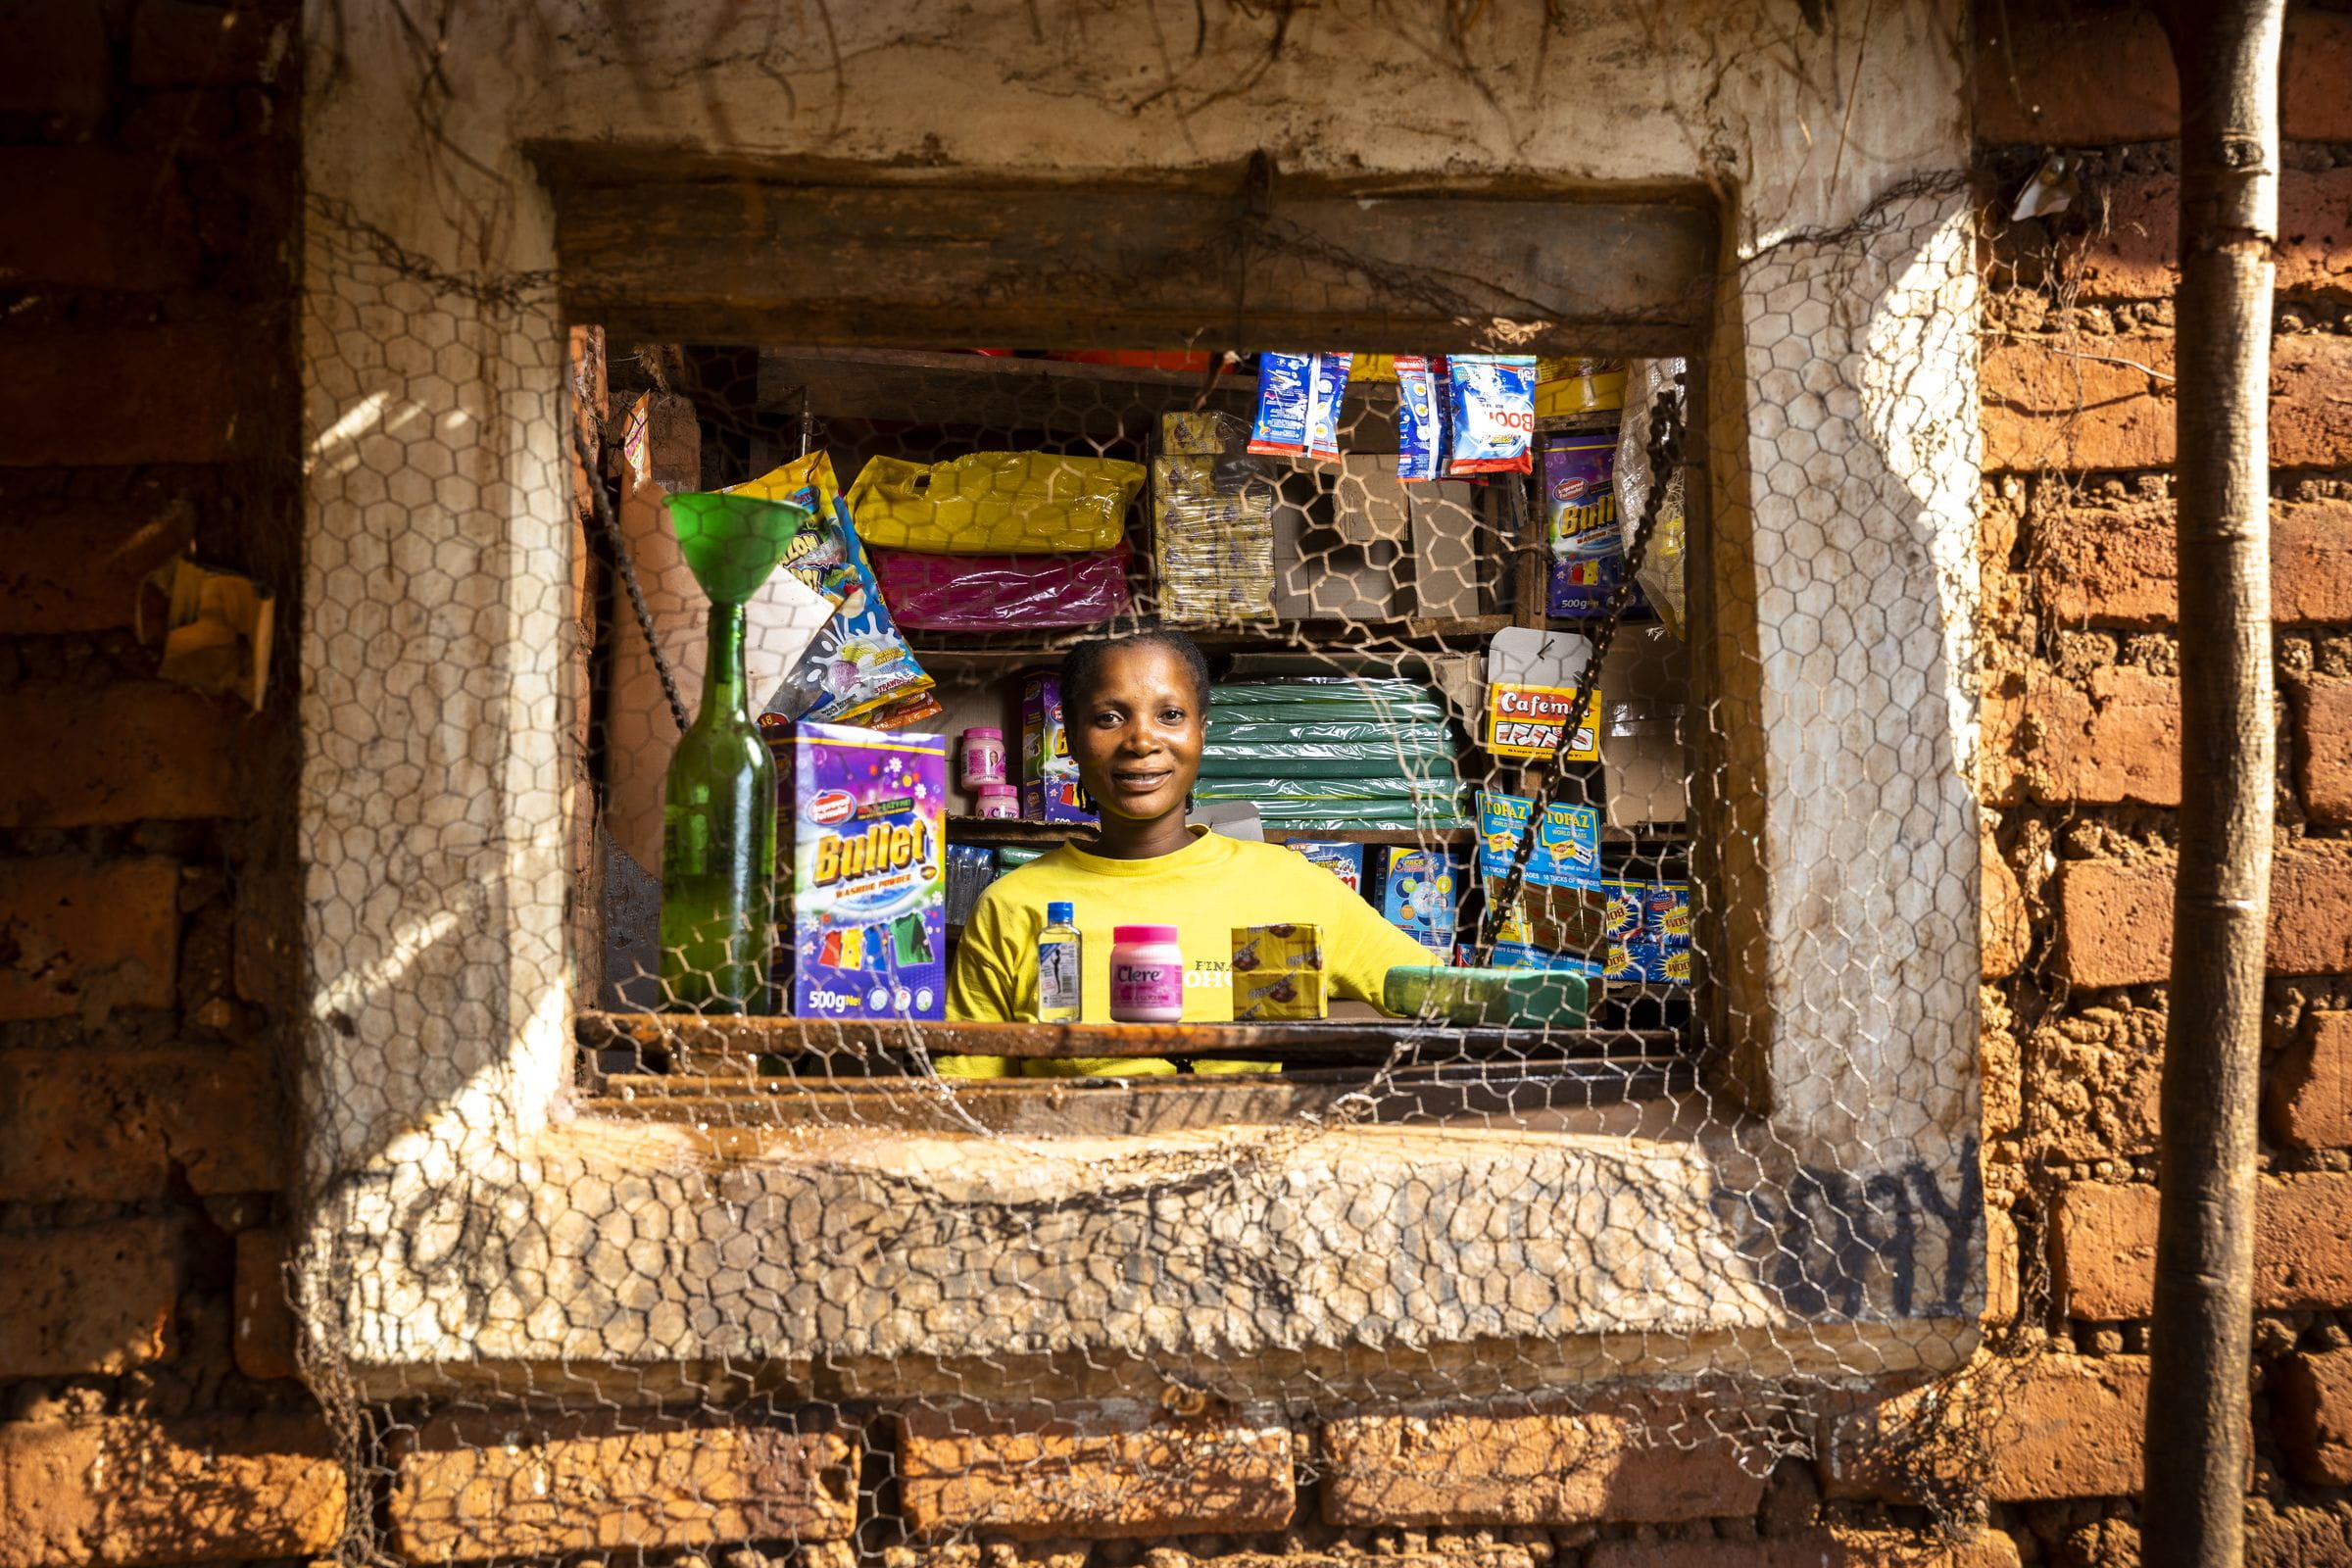 Bridget, eine der EmPowermoms, in ihrem Kiosk in Sambia. (Quelle: Christian O. Bruch)